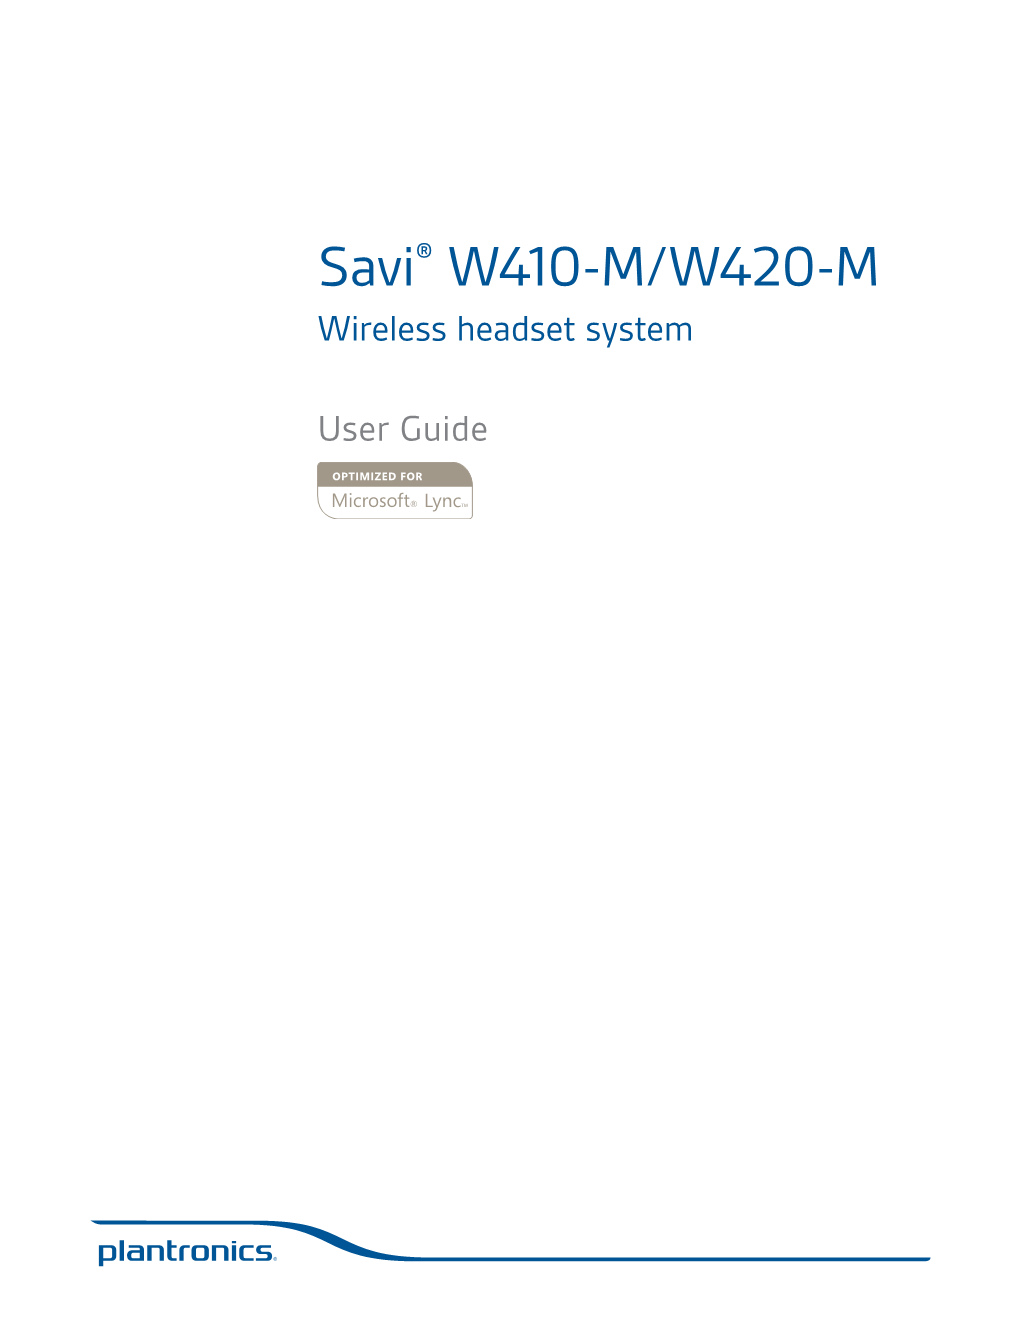 Savi® W410-M/W420-M Wireless Headset System